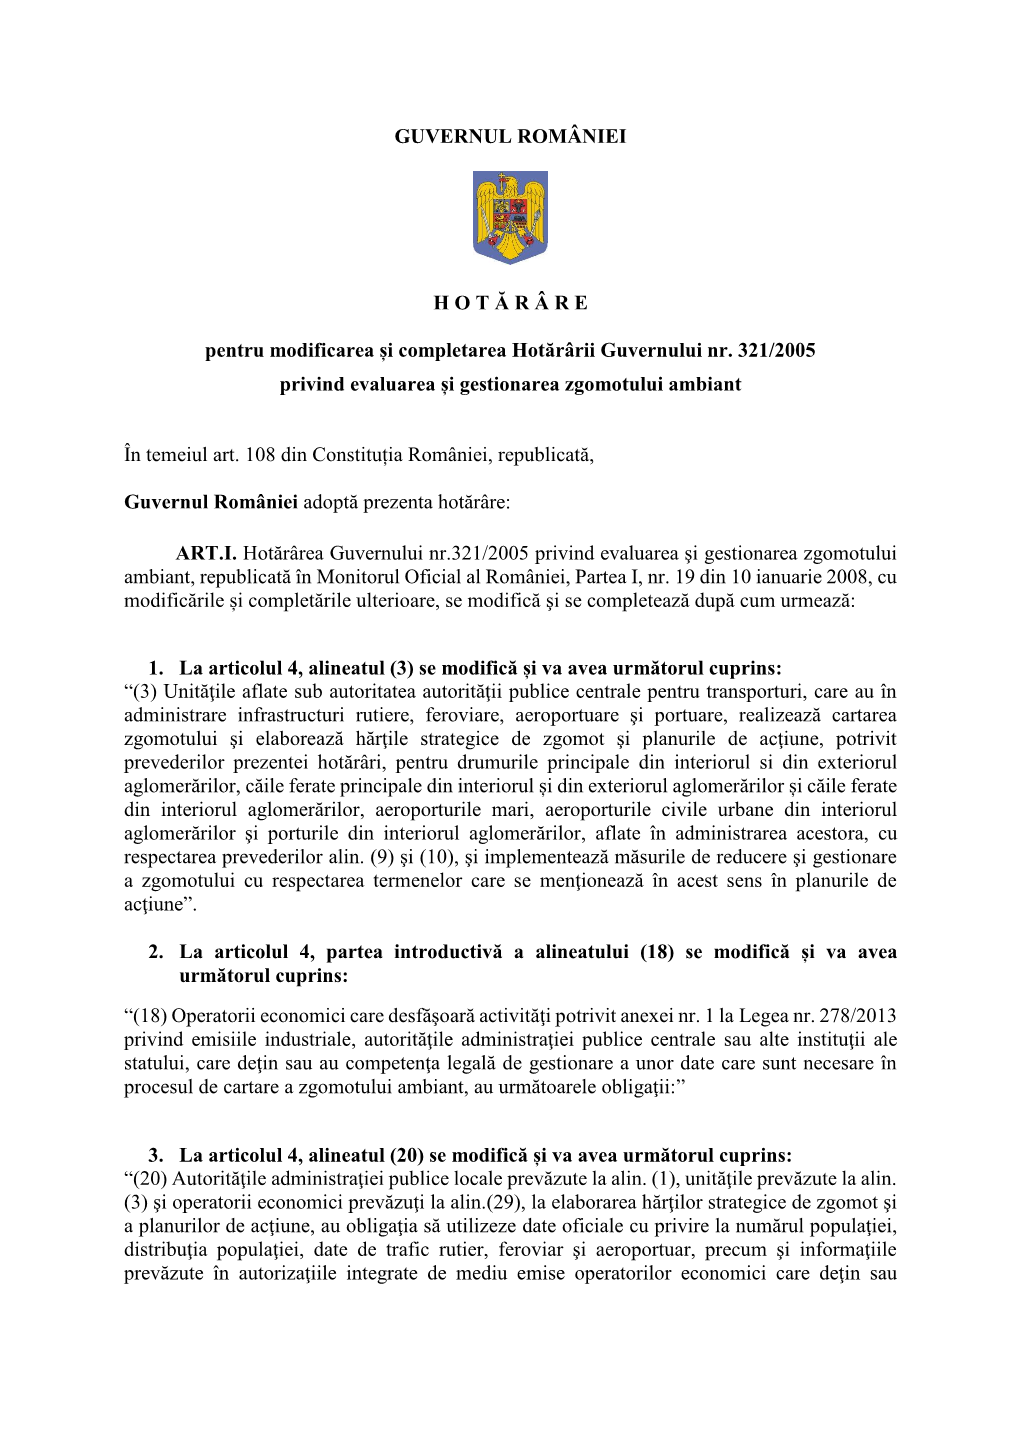 GUVERNUL ROMÂNIEI H O T Ă R Â R E Pentru Modificarea Și Completarea Hotărârii Guvernului Nr. 321/2005 Privind Evaluarea